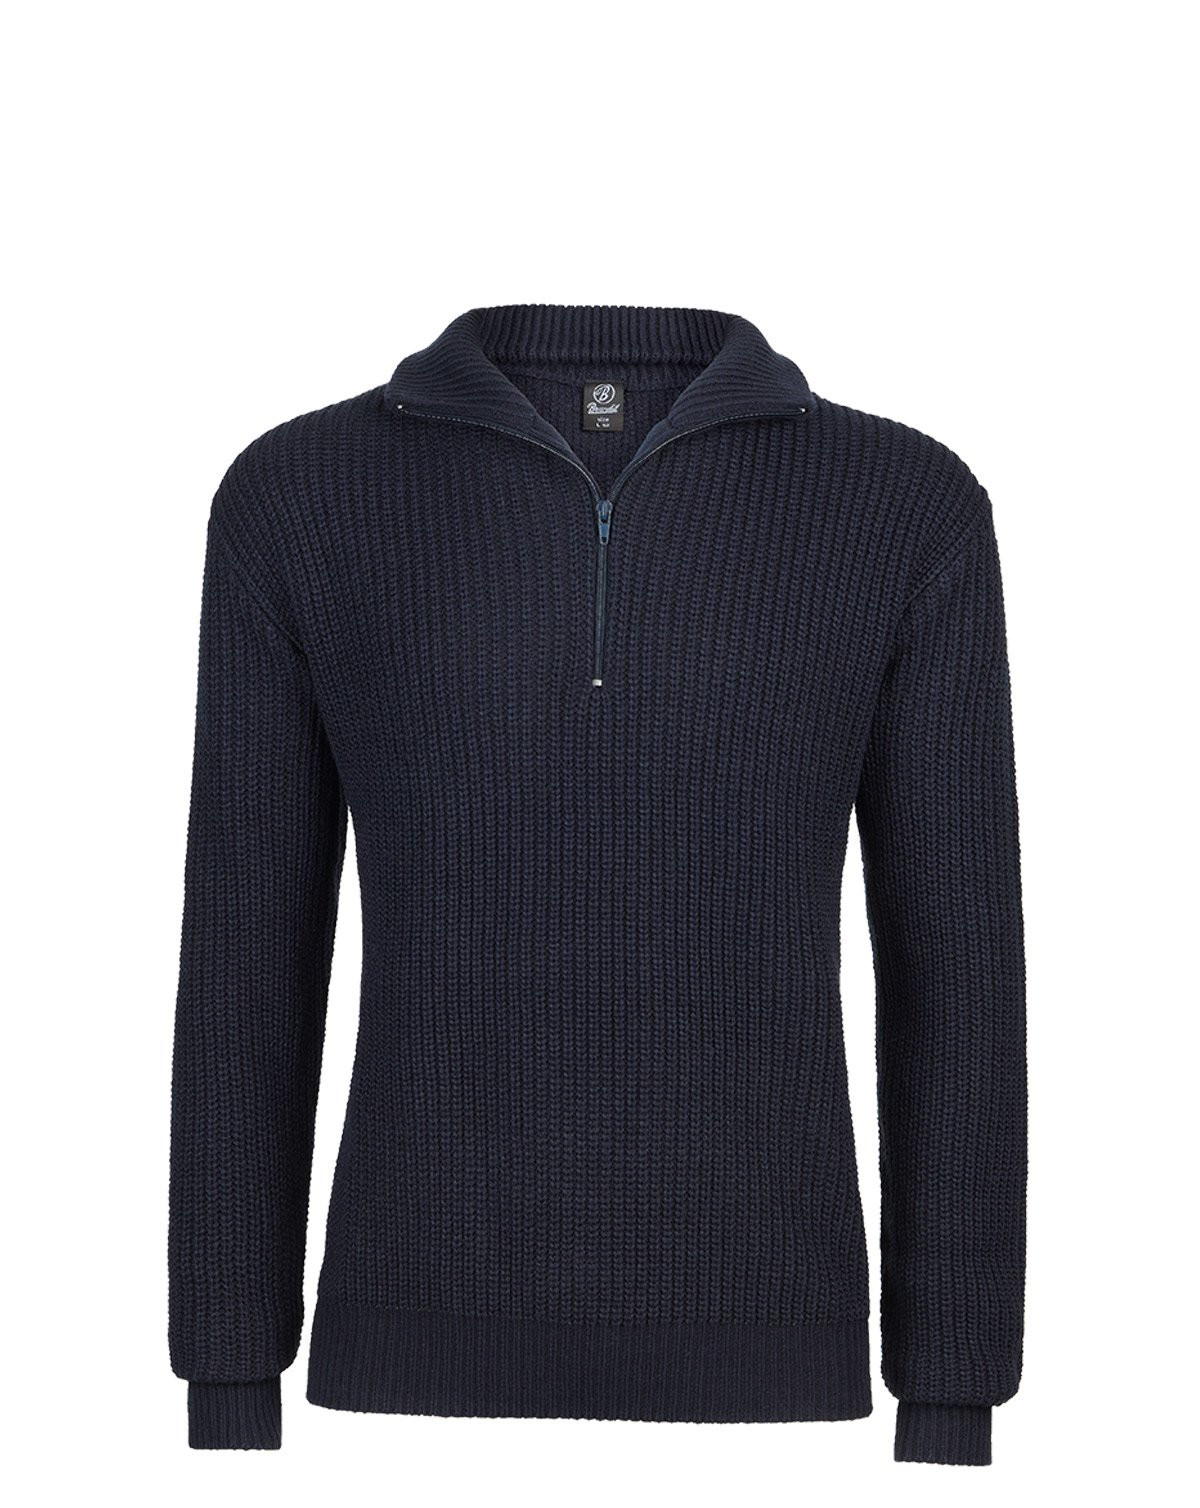 Brandit Marine Pullover Troyer Sweater (Navy, 2XL)